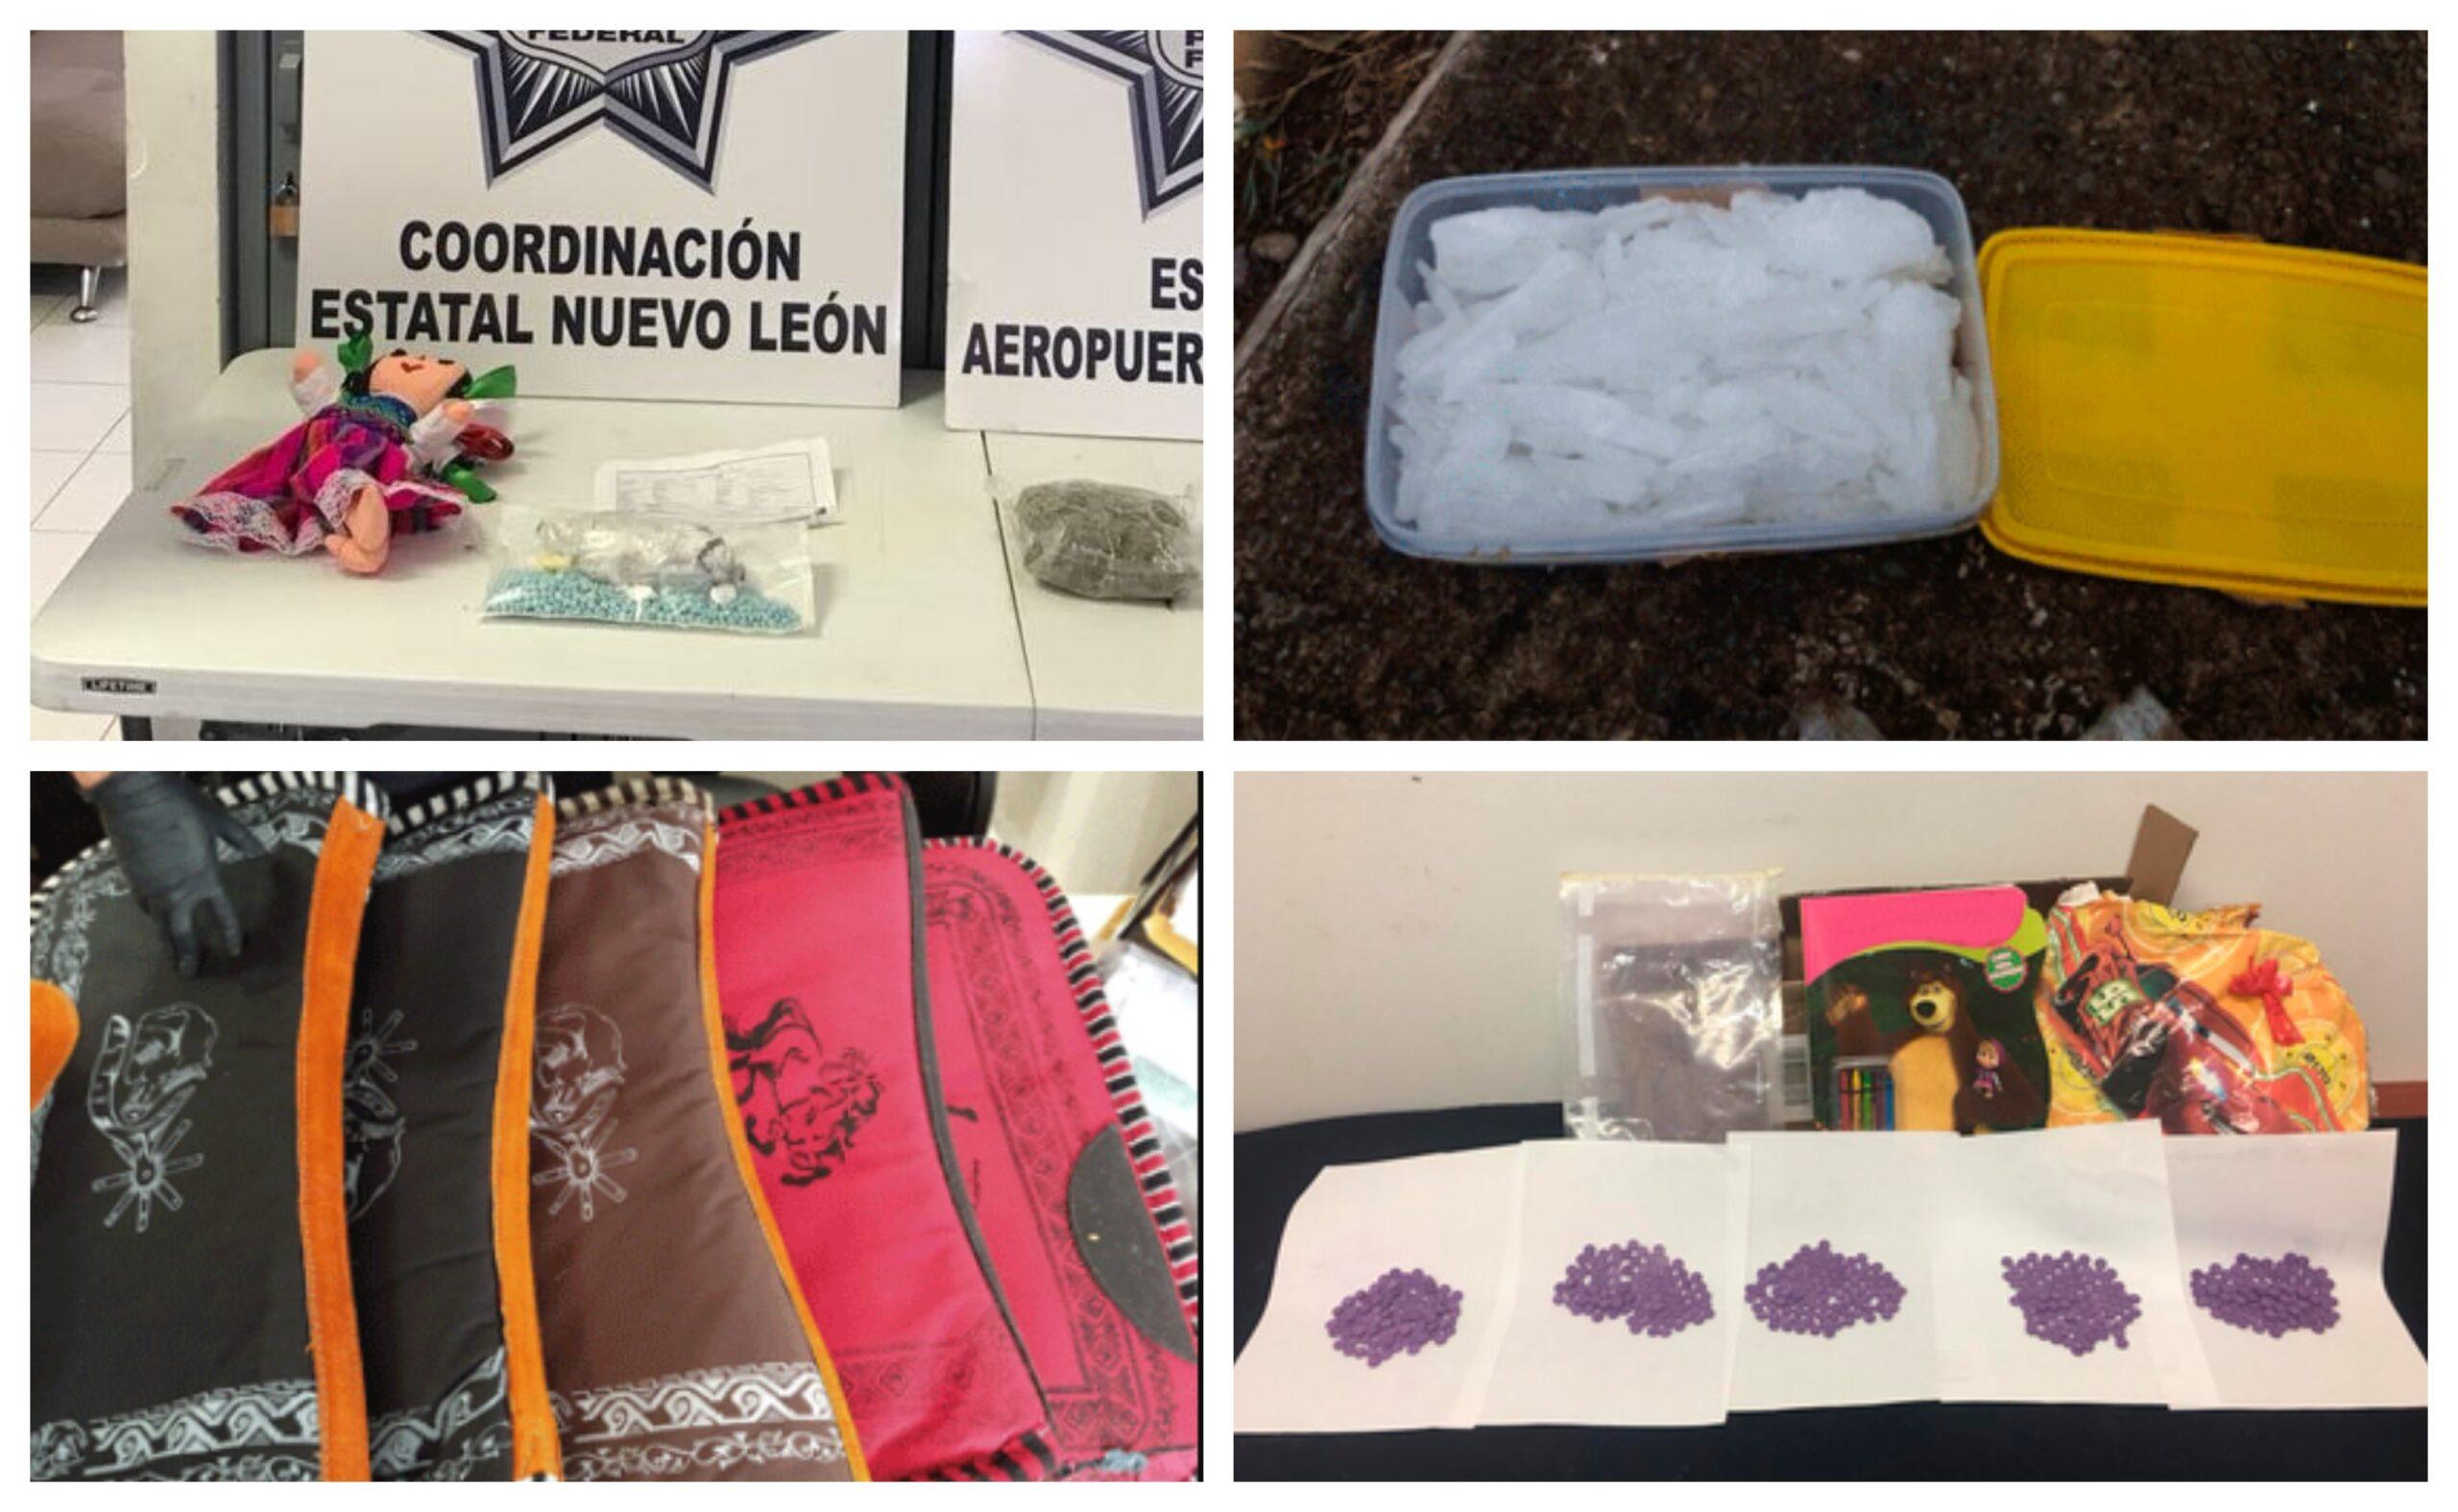 Hallan metanfetaminas, mariguana y cristal en libros, muñecas y tuppers en aeropuertos de México